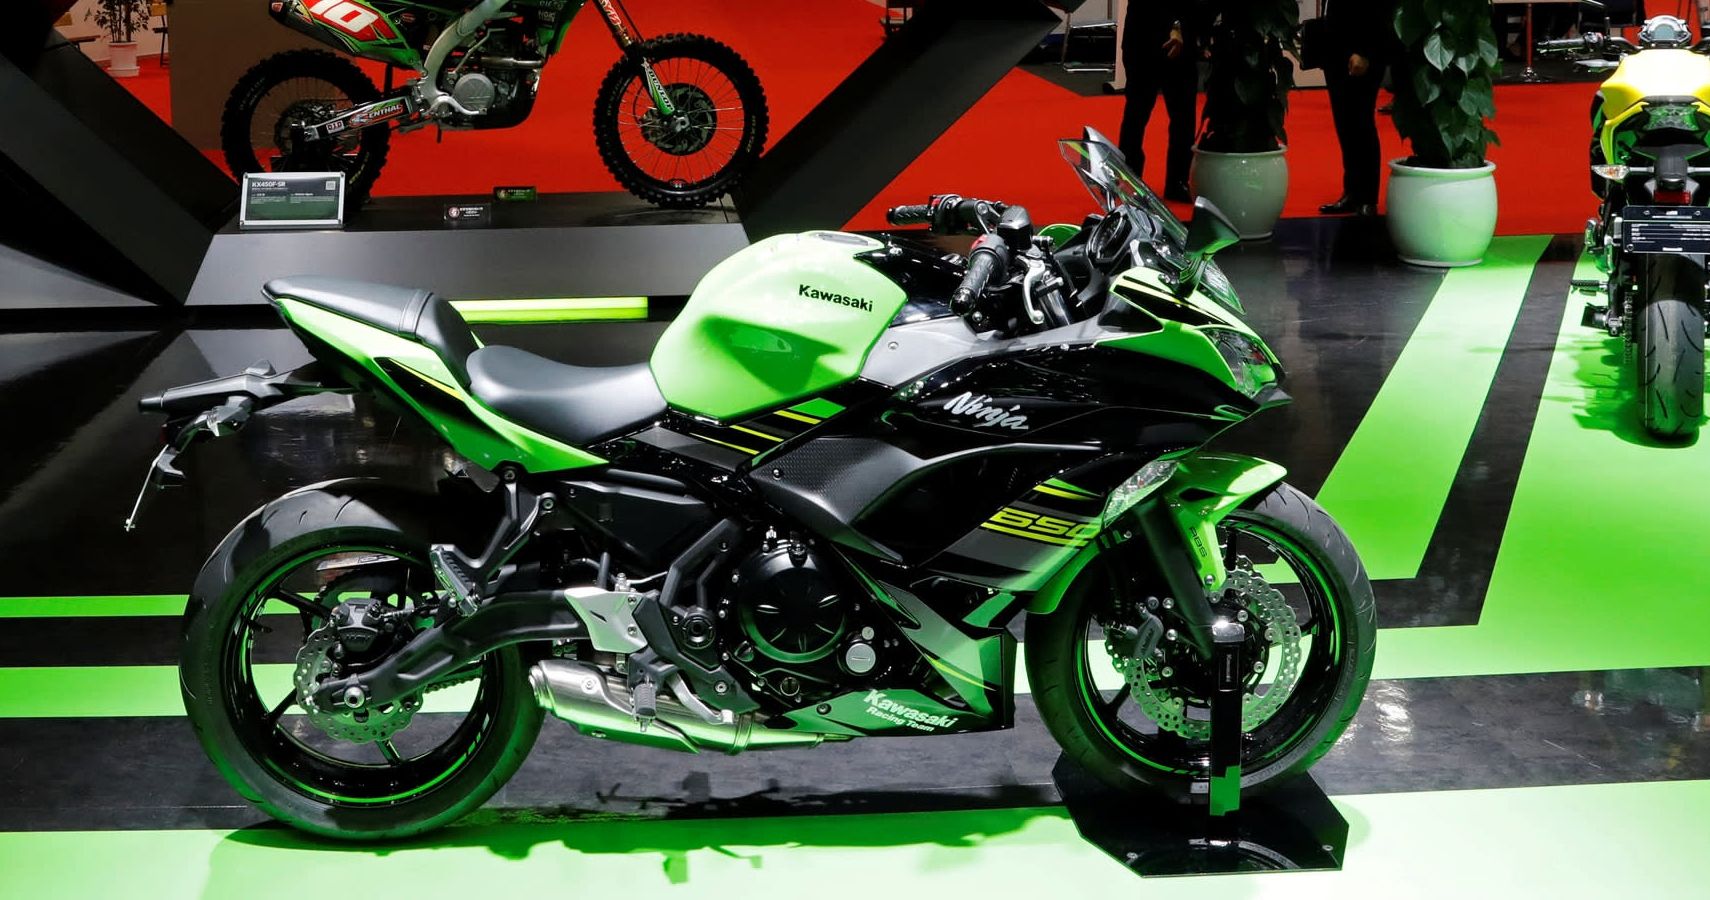 The 10 Best Kawasaki Motorcycles Made, Ranked